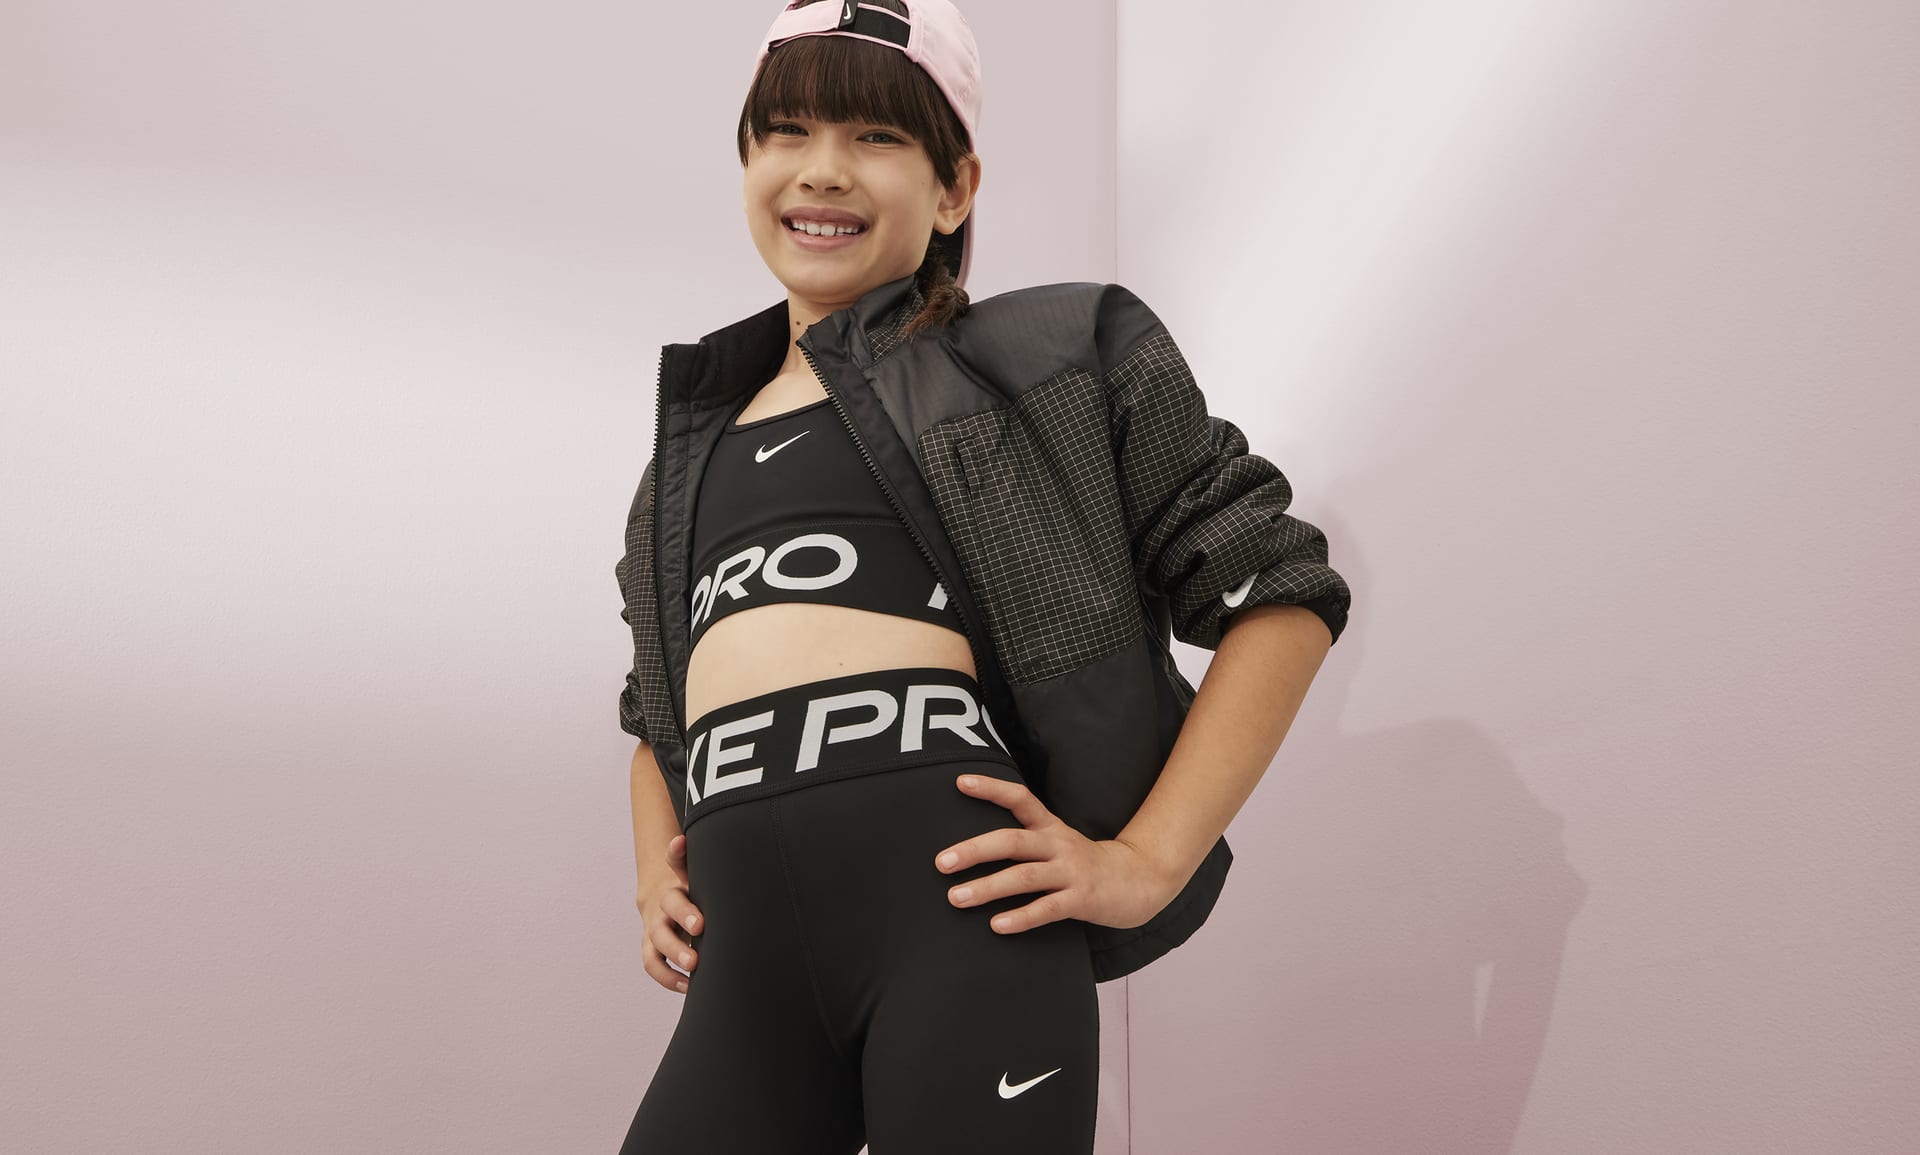 NEW! Nike Pro WARM Girls Dri-Fit Warm Legging Pants Rainbow CJ4370-478 XL